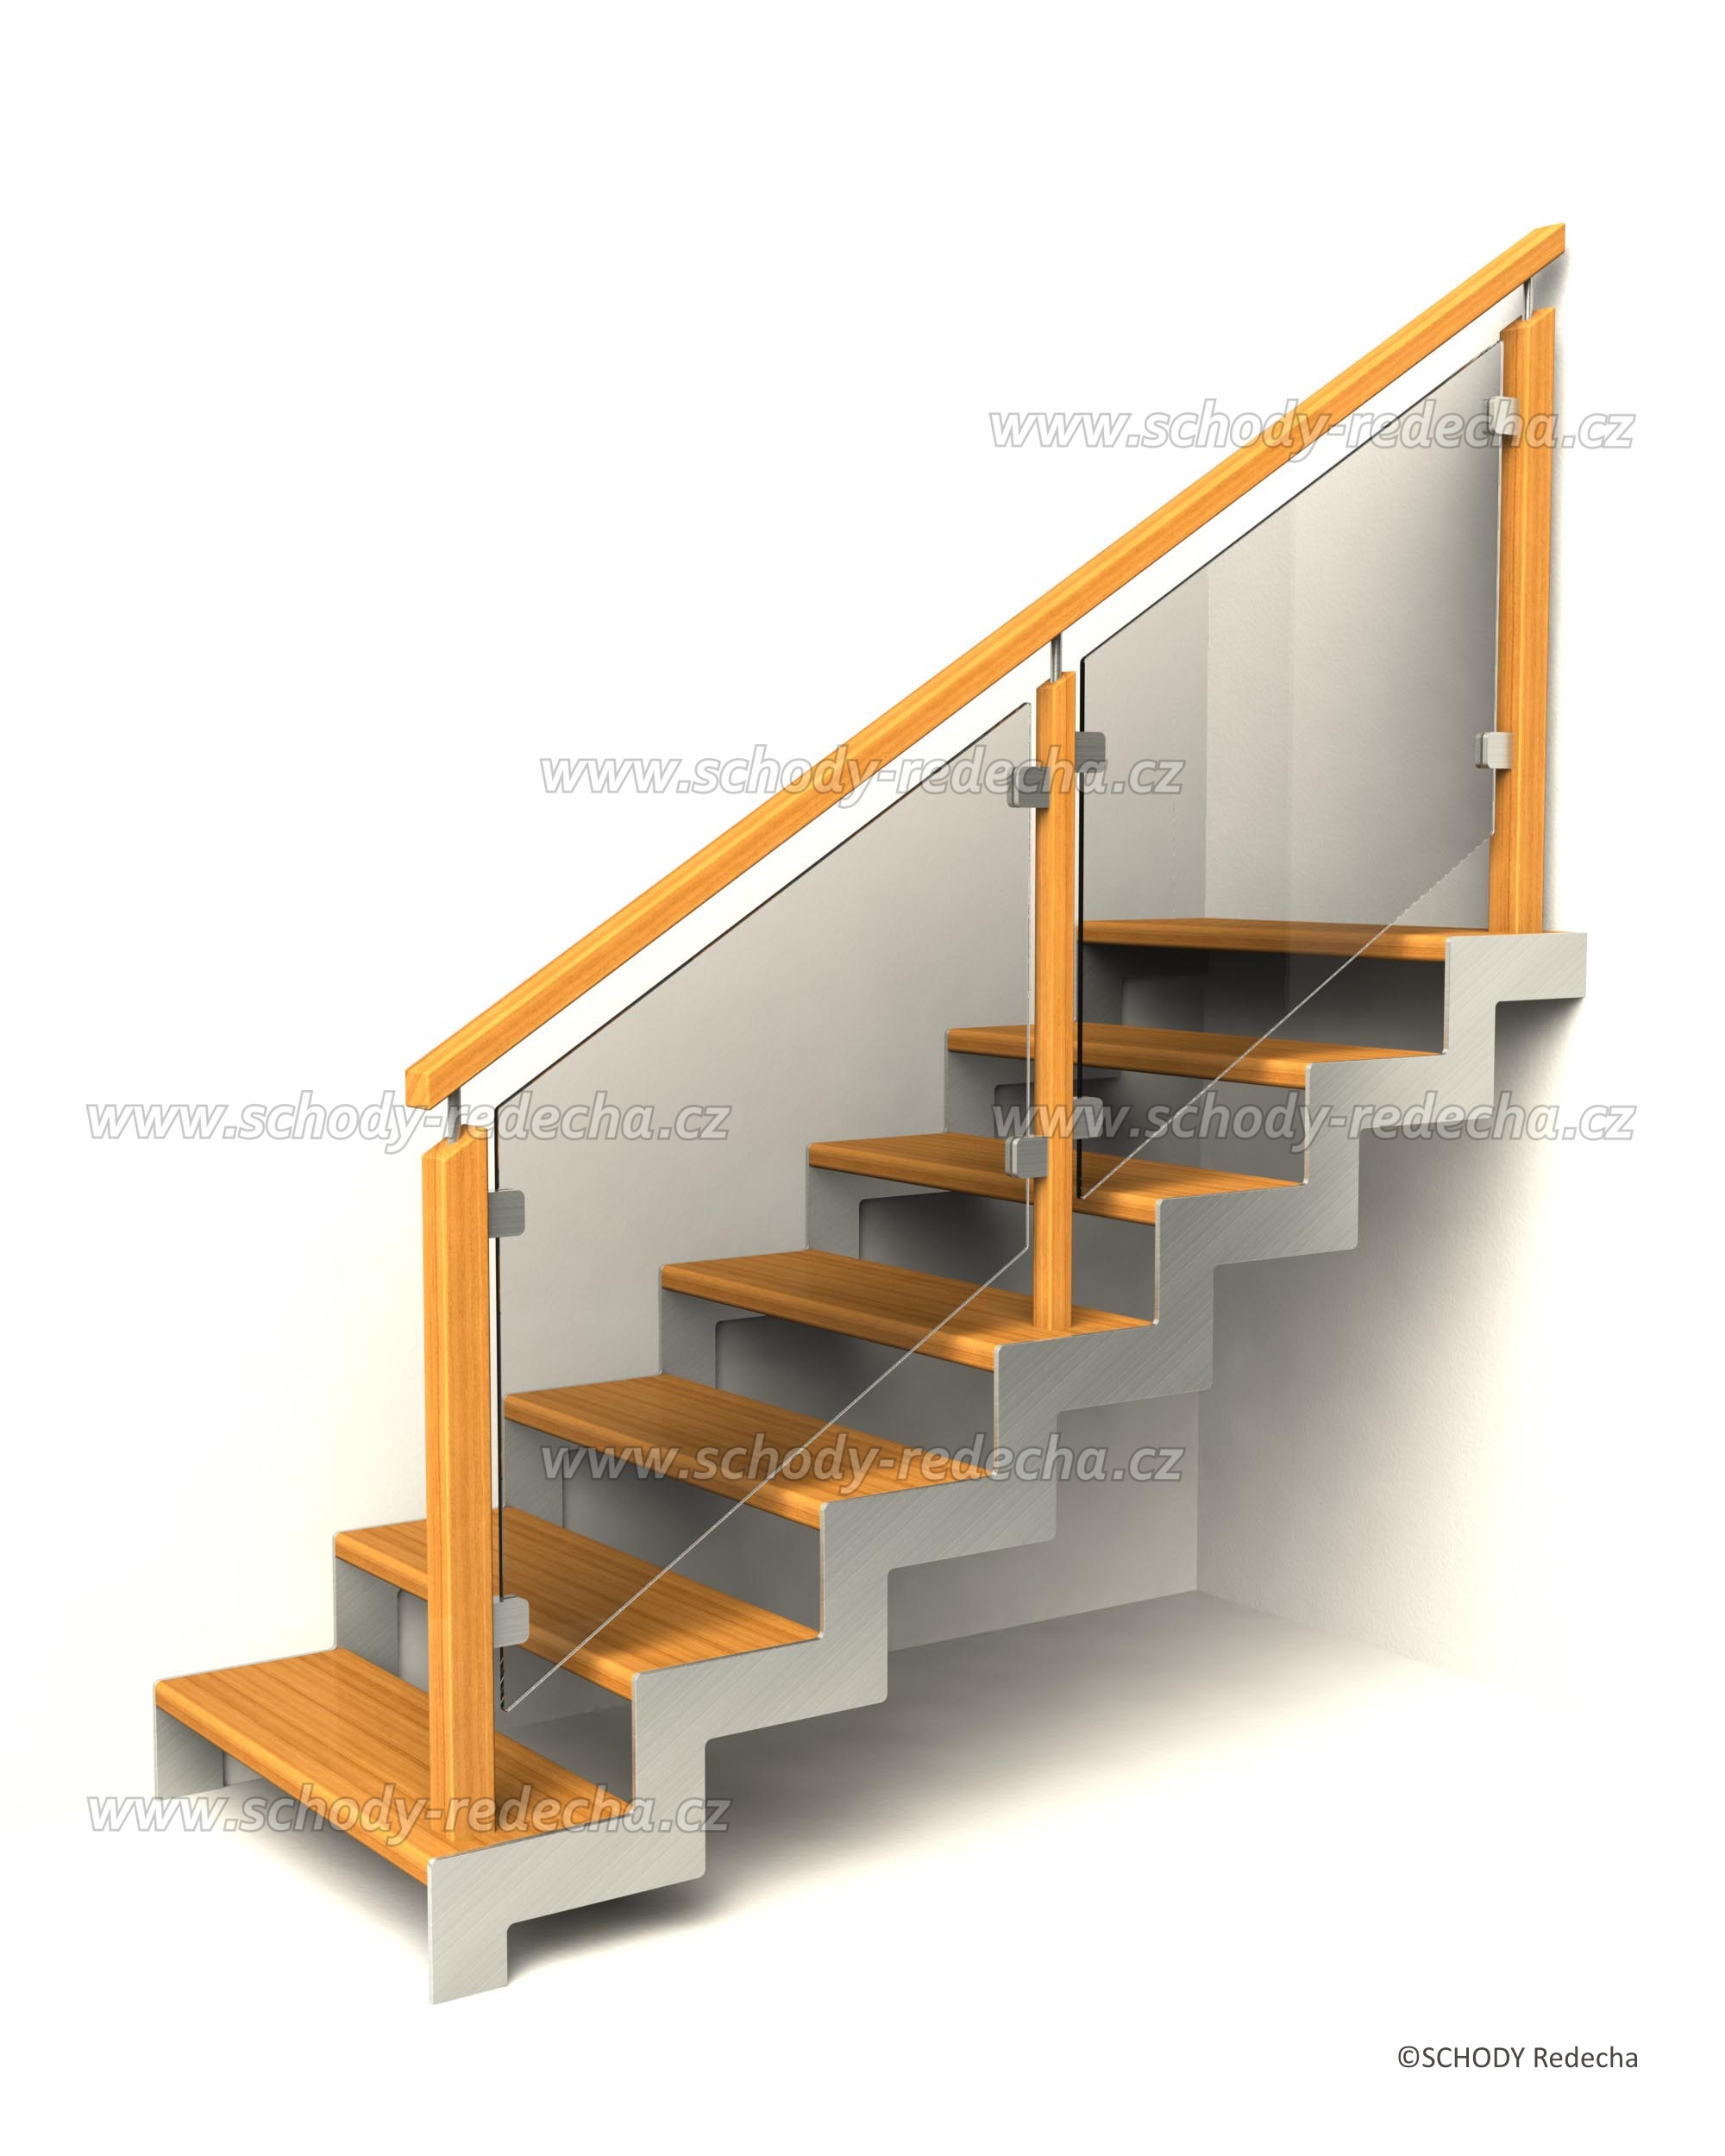 nerezove schody VB6